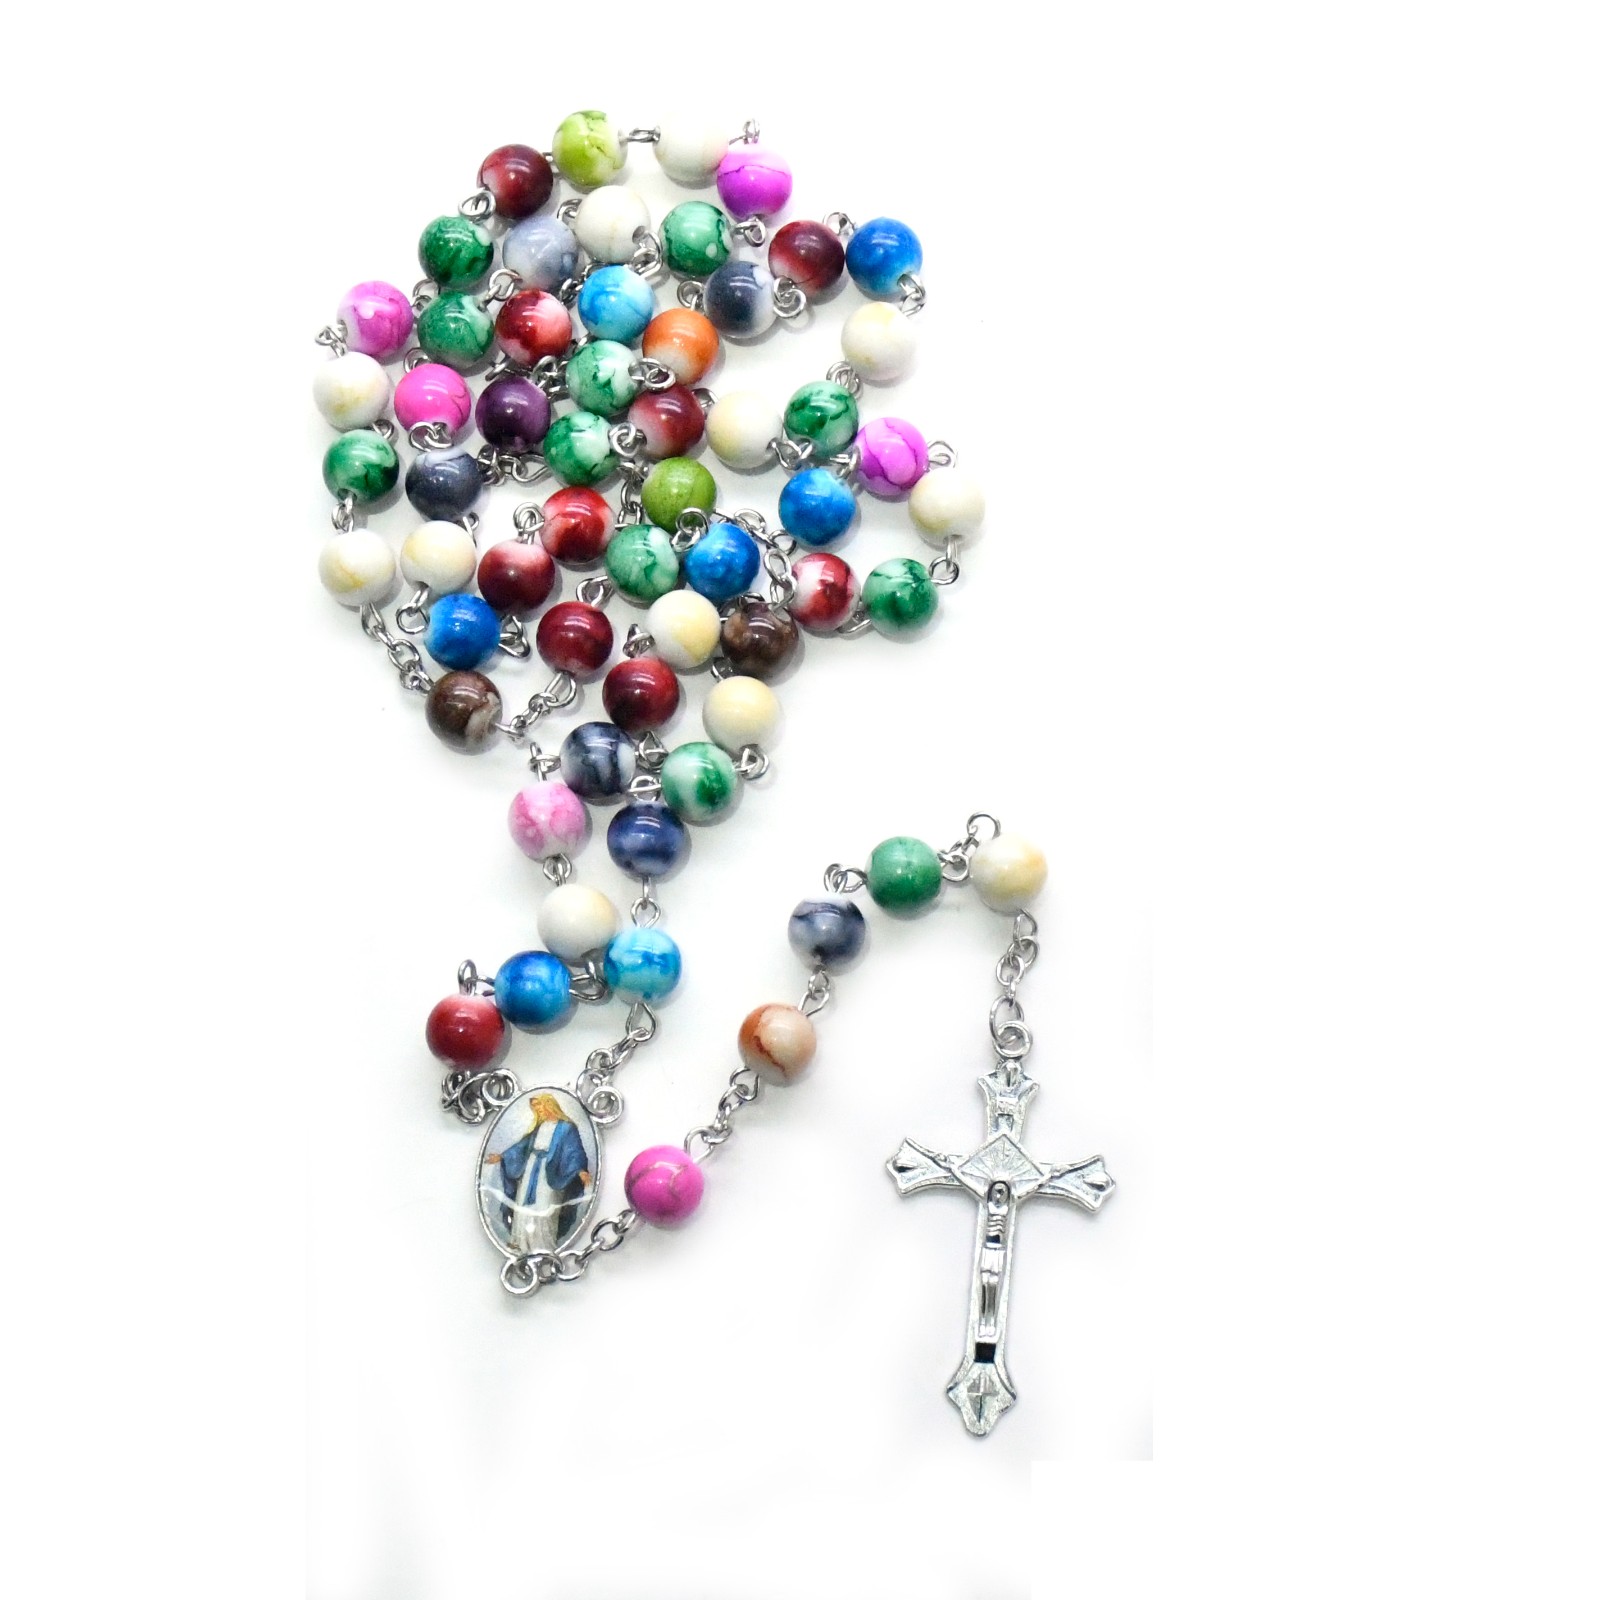 彩色念珠8mm彩珠十字架项链玛丽亚外贸十字架用品批发